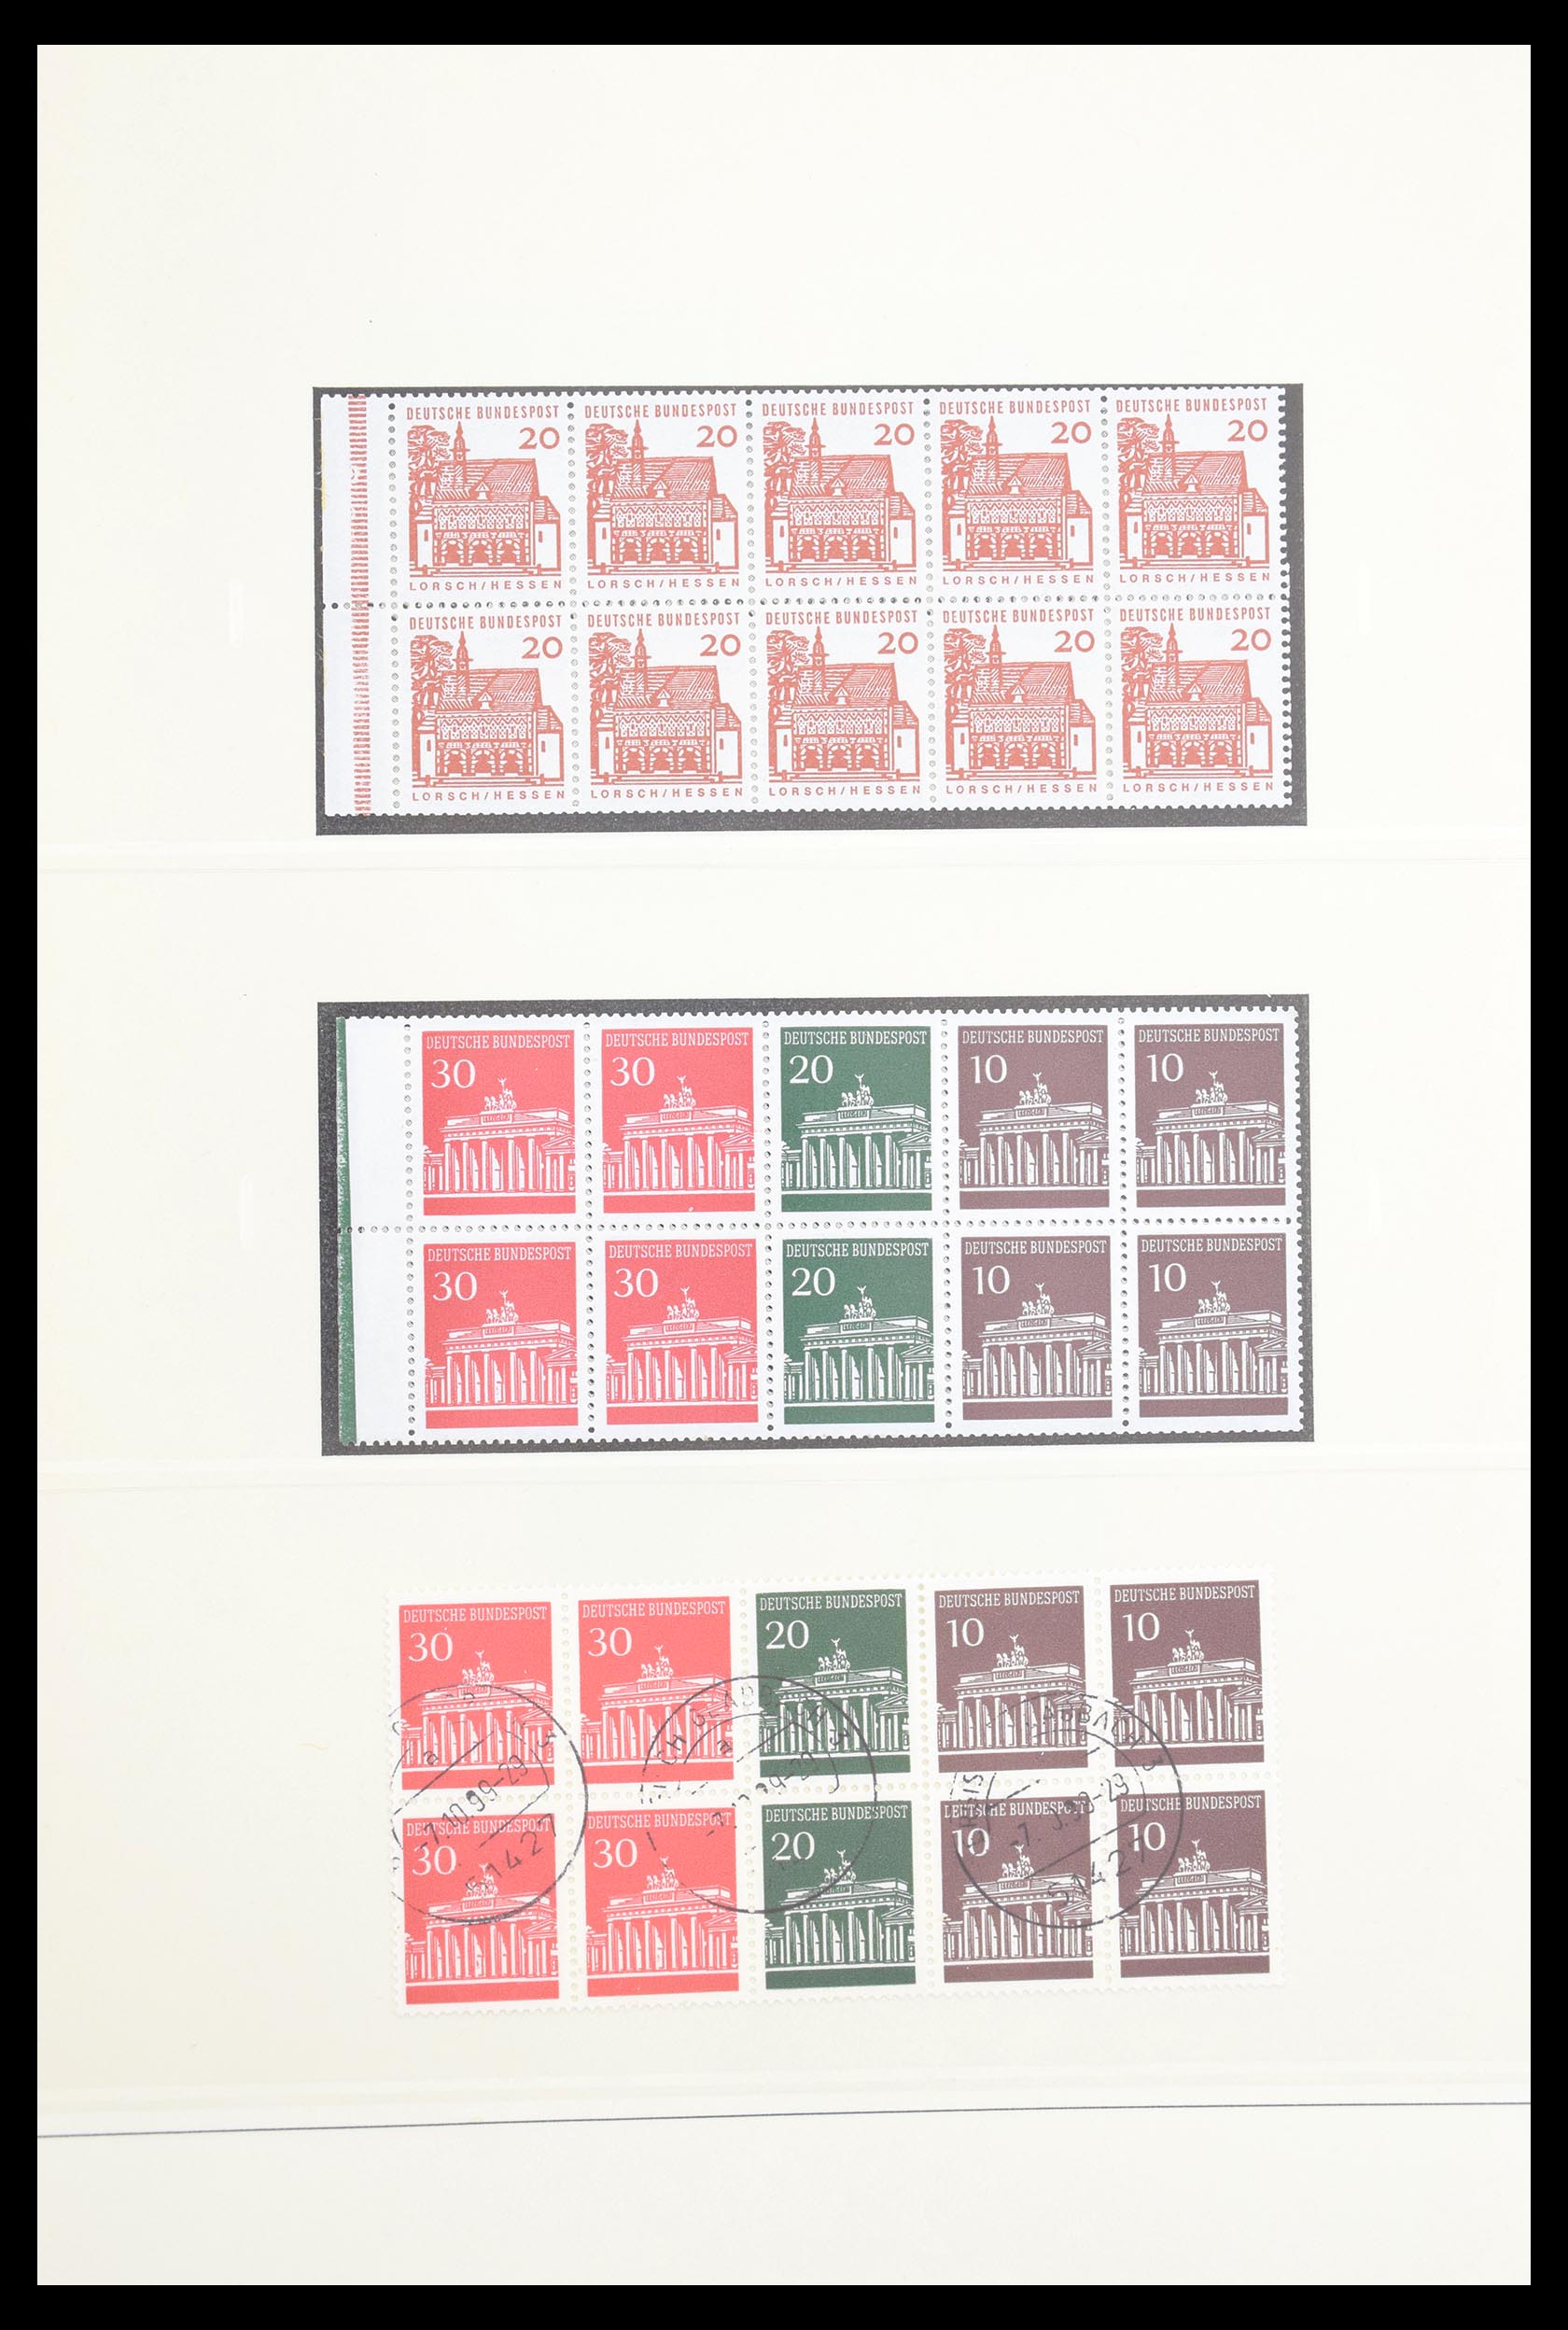 30605 024 - 30605 Bundespost combinaties 1951-1974.